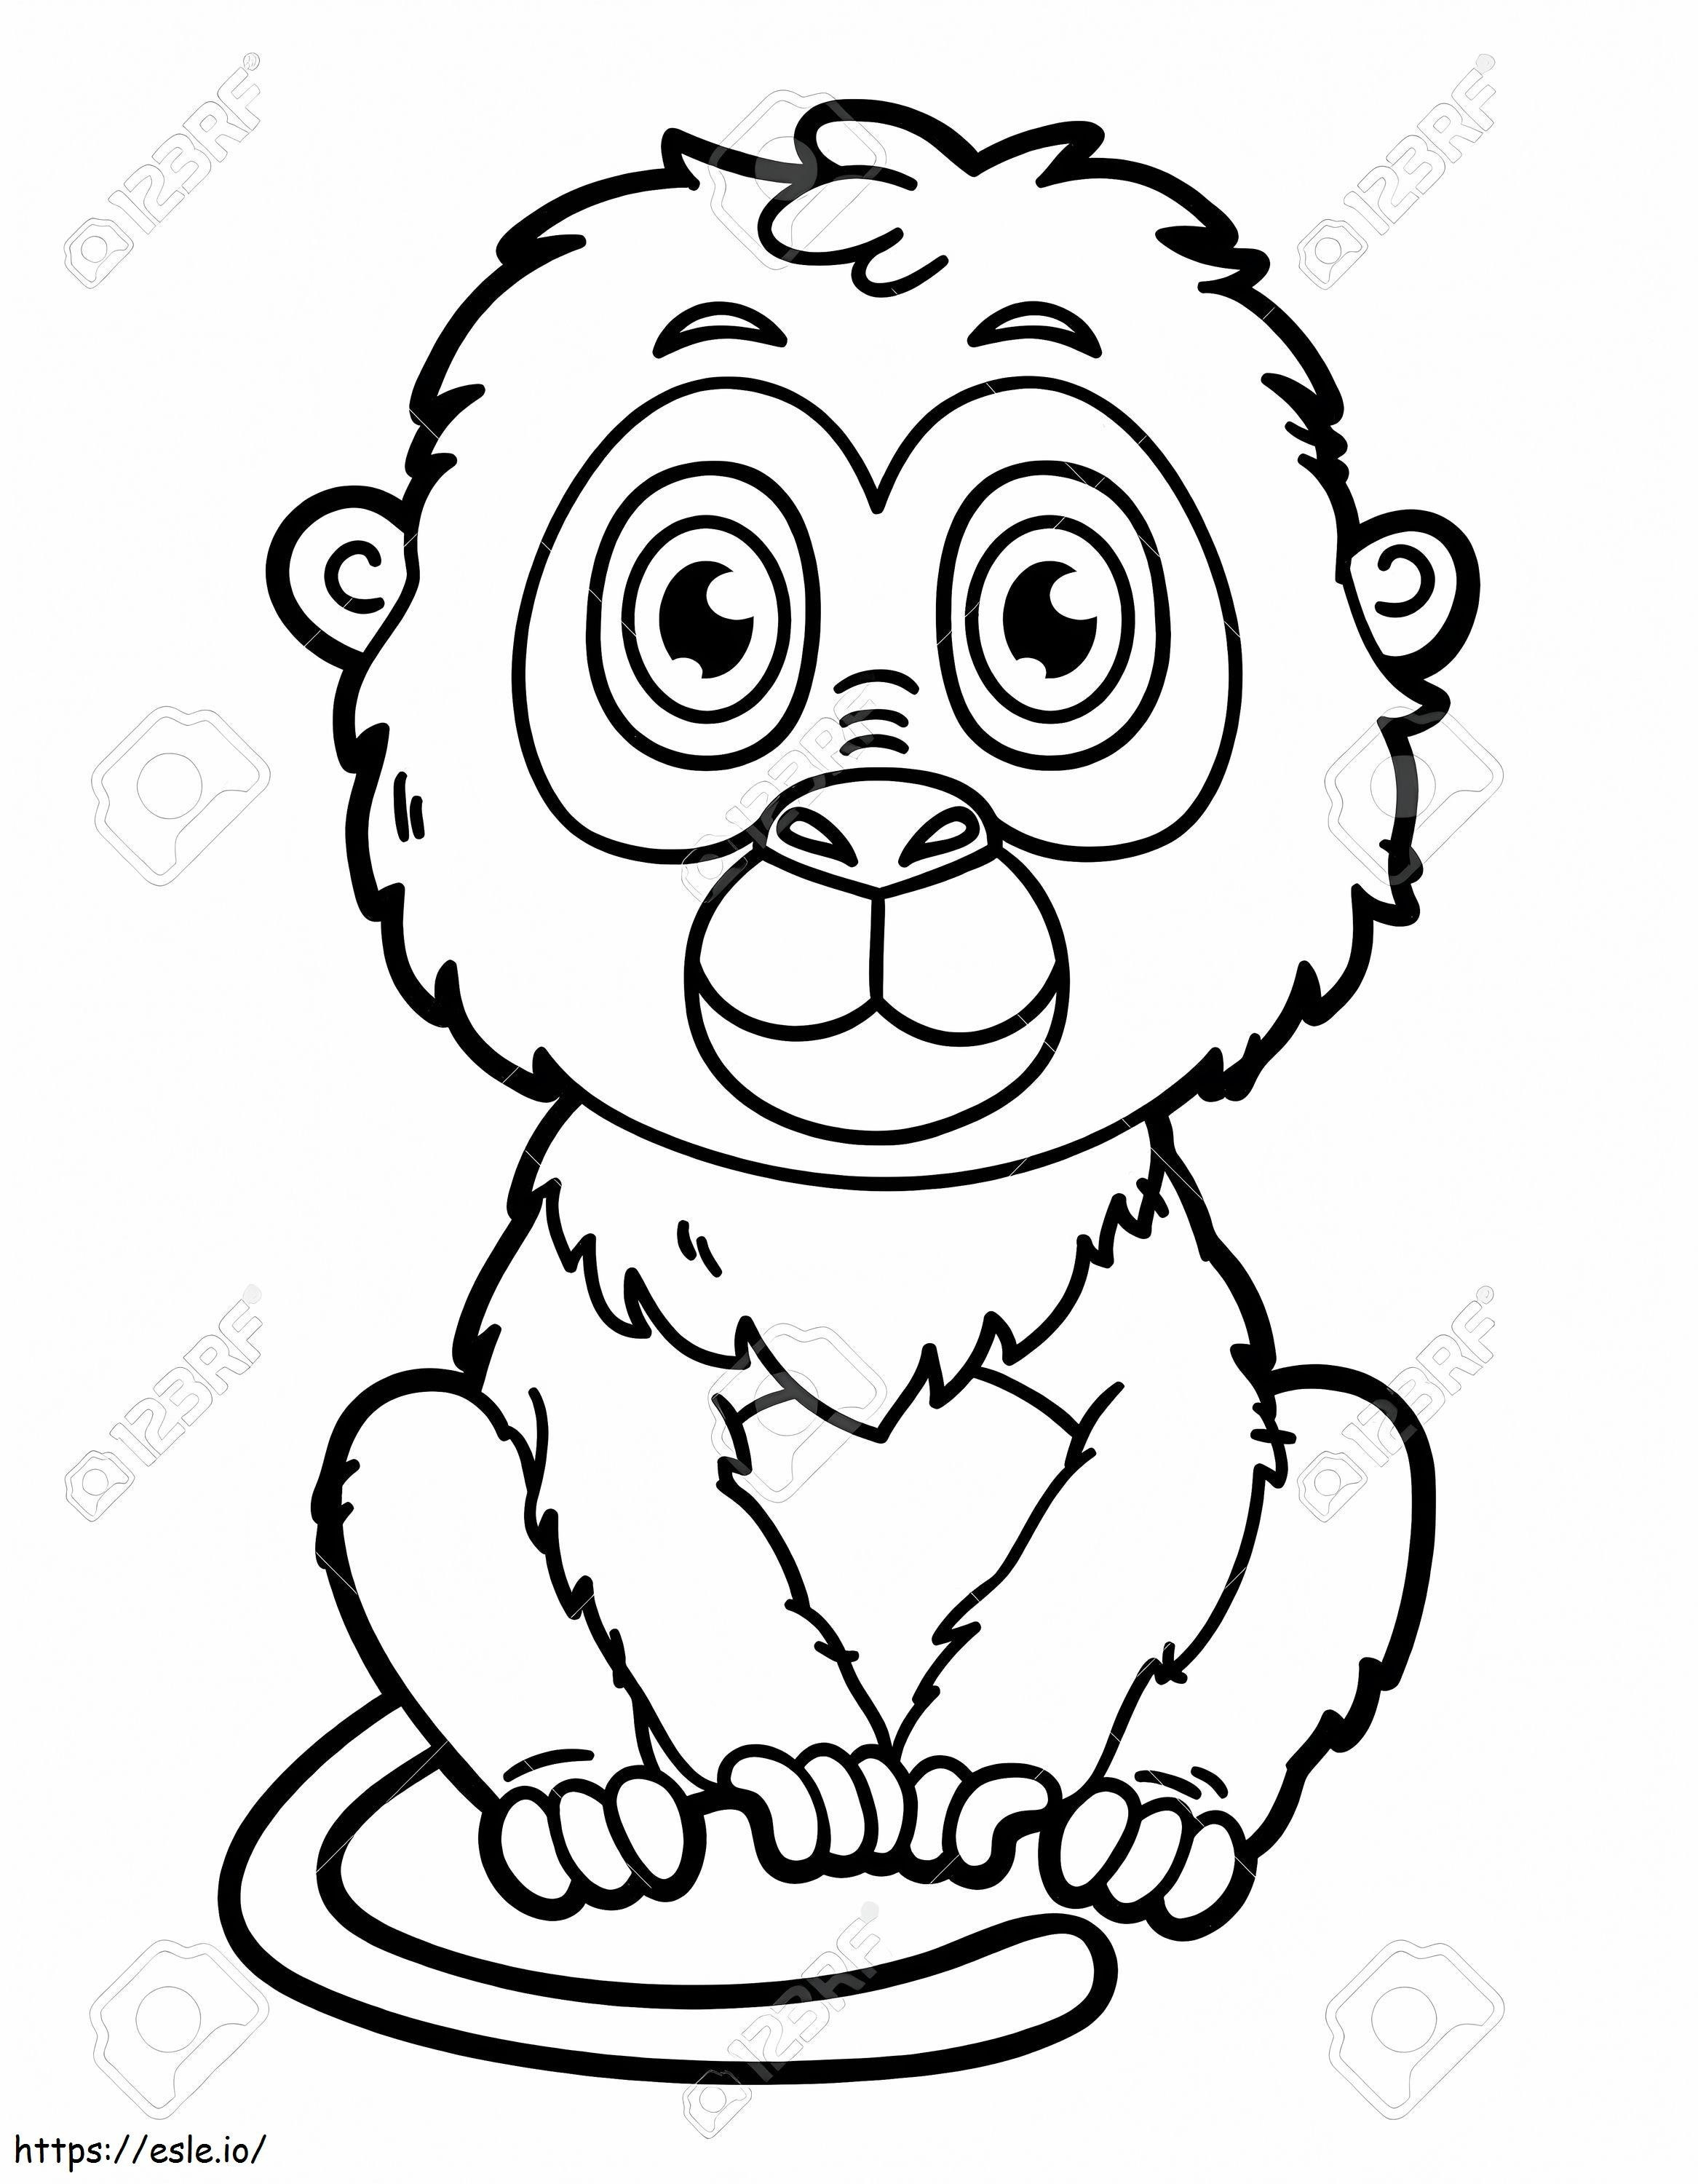  Mono de dibujos animados Ilustración de vector de mono divertido Dibujos animados felices de mono de dibujos animados para colorear